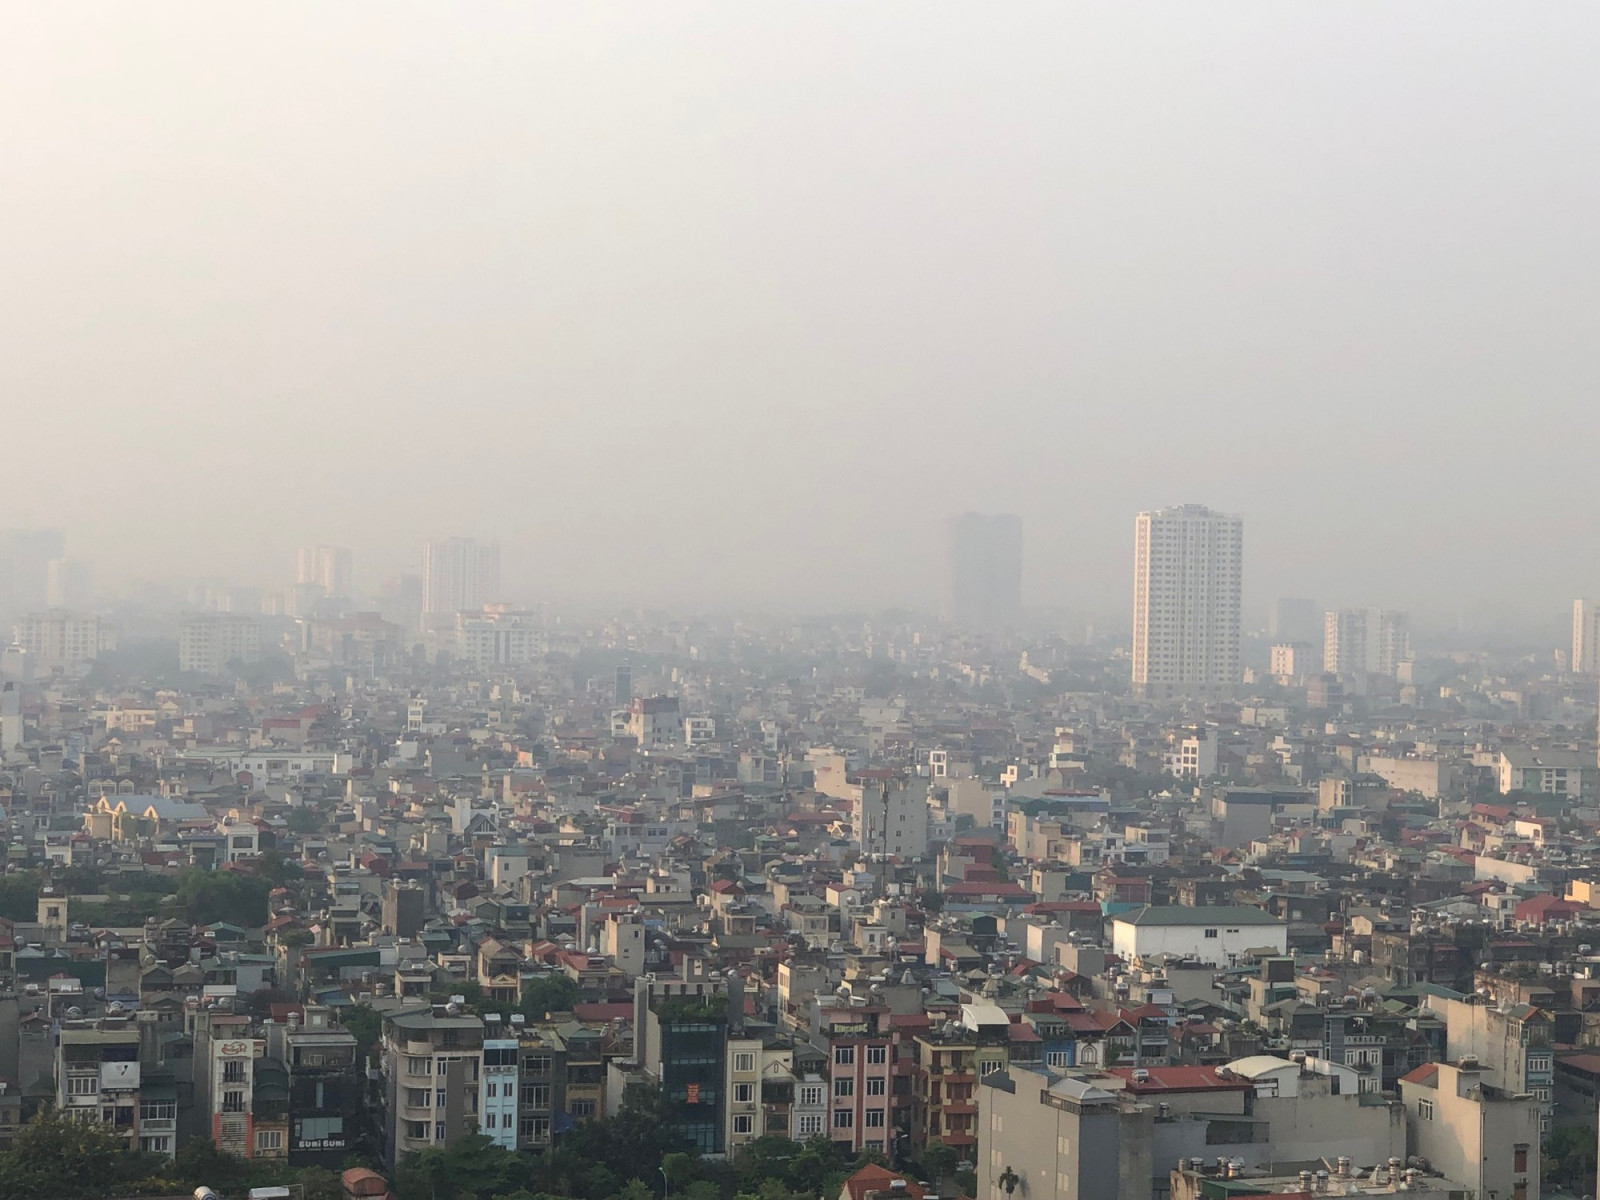  Ô nhiễm môi trường không khí đã và đang gây ra những tác động trực tiếp tới sức khỏe cộng đồng. (Ảnh minh họa)